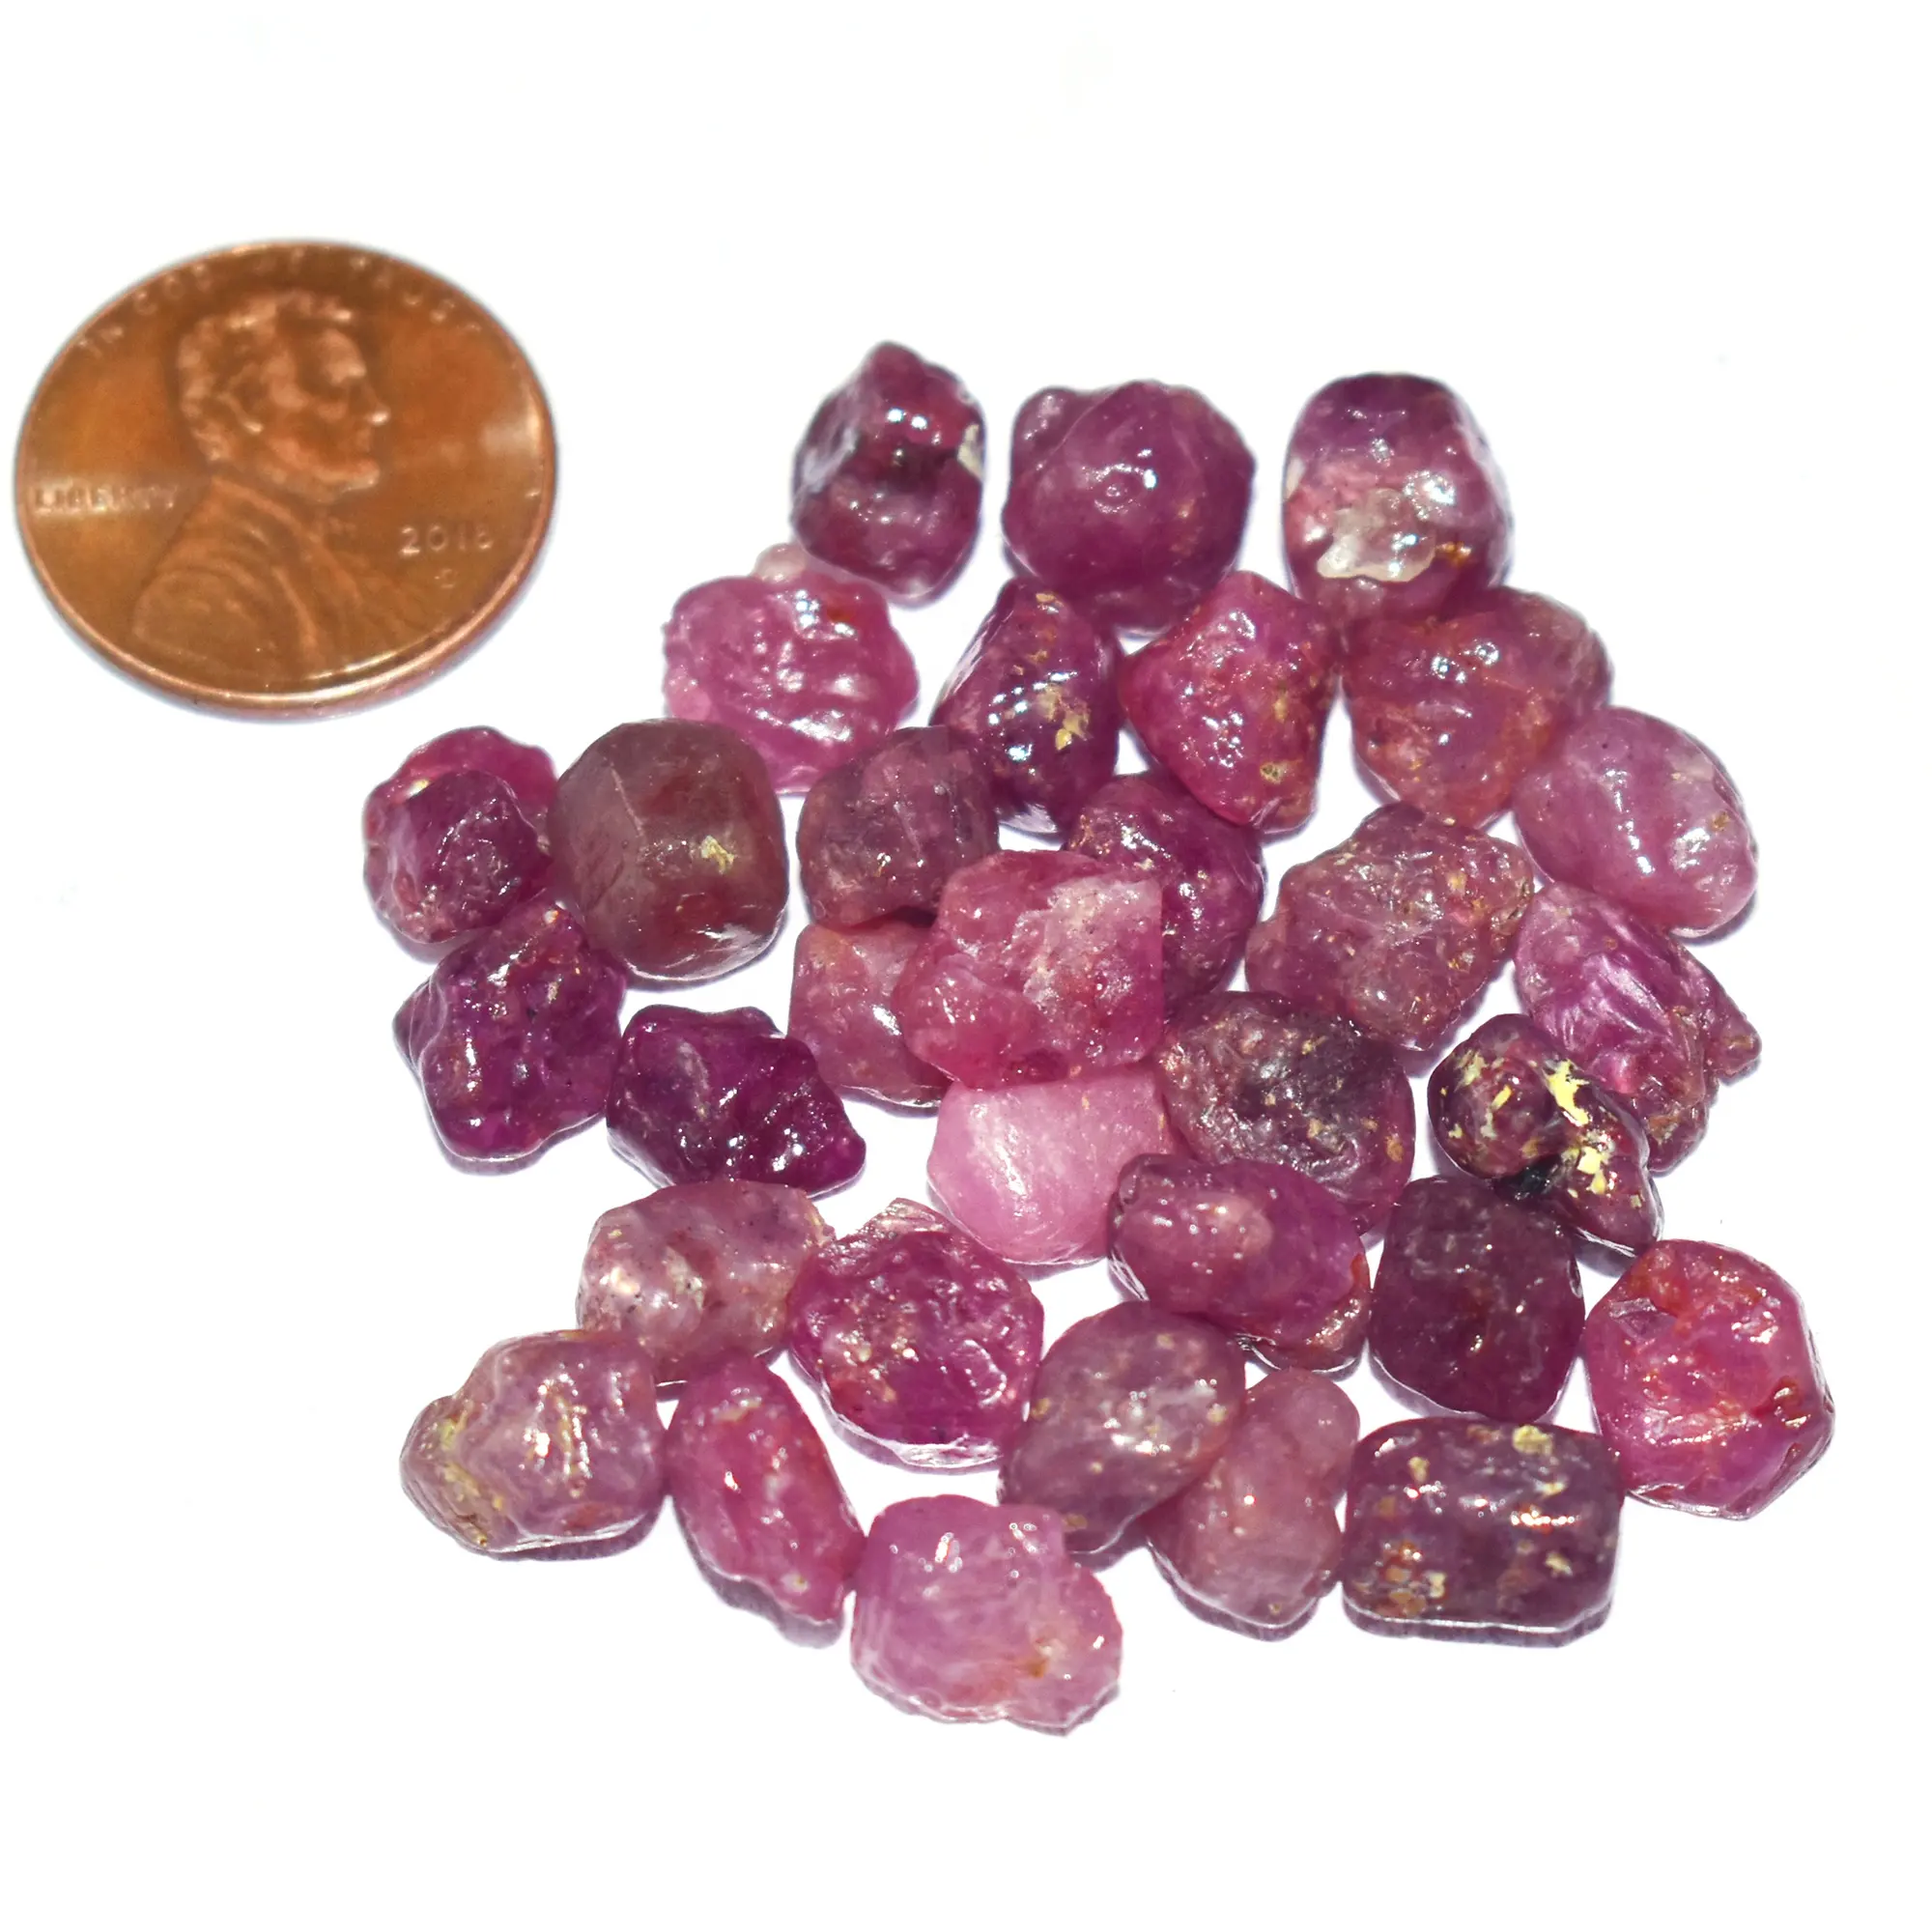 Piedra preciosa suelta sin cortar de rubí raro, gemas de piedra natal para la venta, precio al por mayor auténtico vendedor de piedra suelta